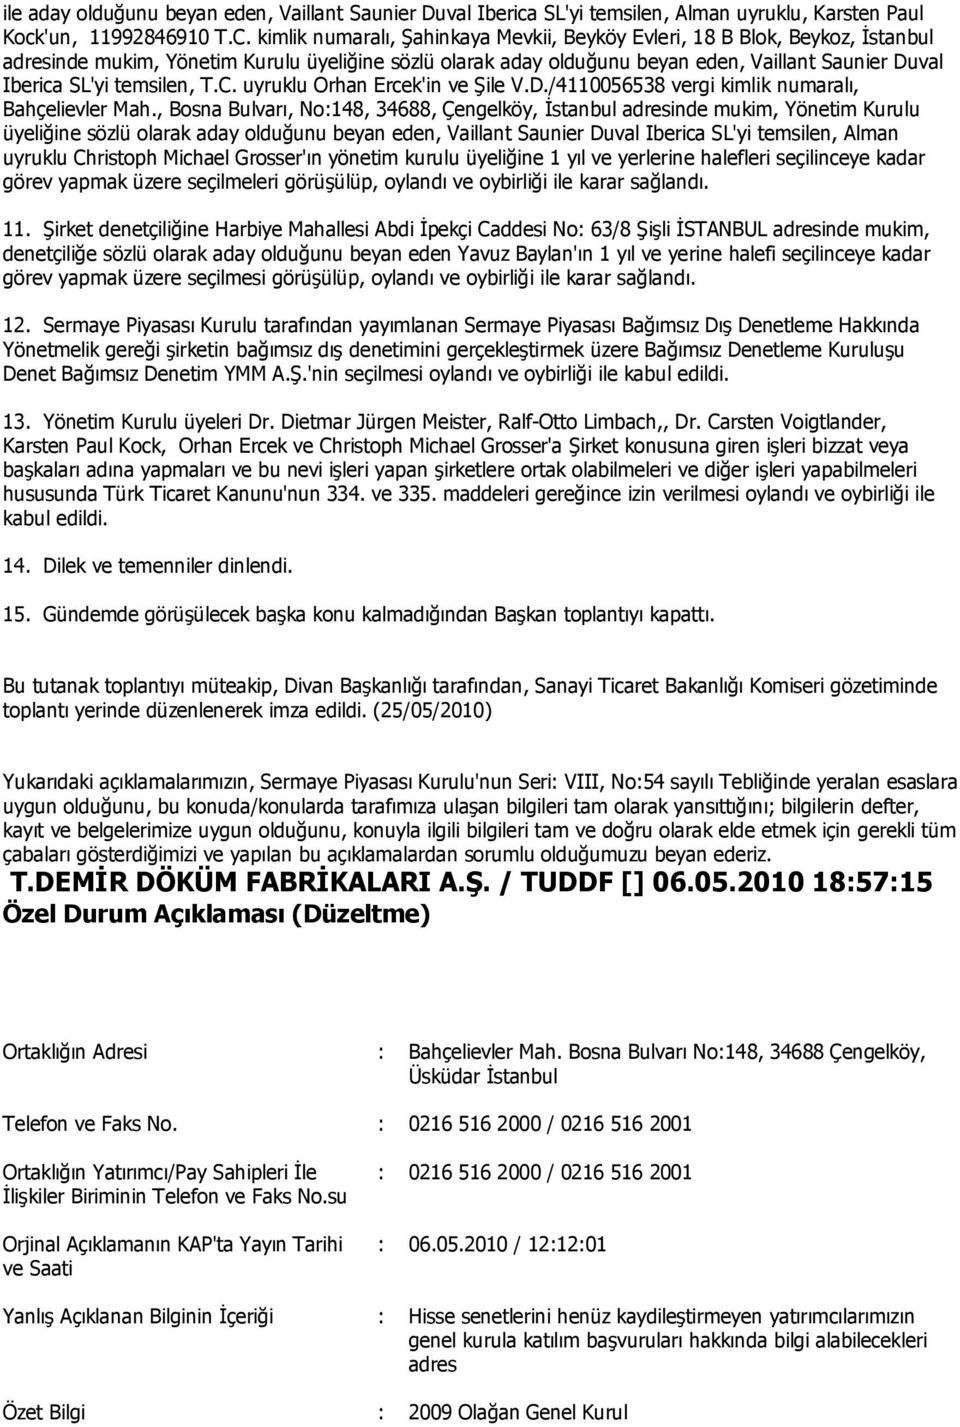 temsilen, T.C. uyruklu Orhan Ercek'in ve Şile V.D./4110056538 vergi kimlik numaralı, Bahçelievler Mah.